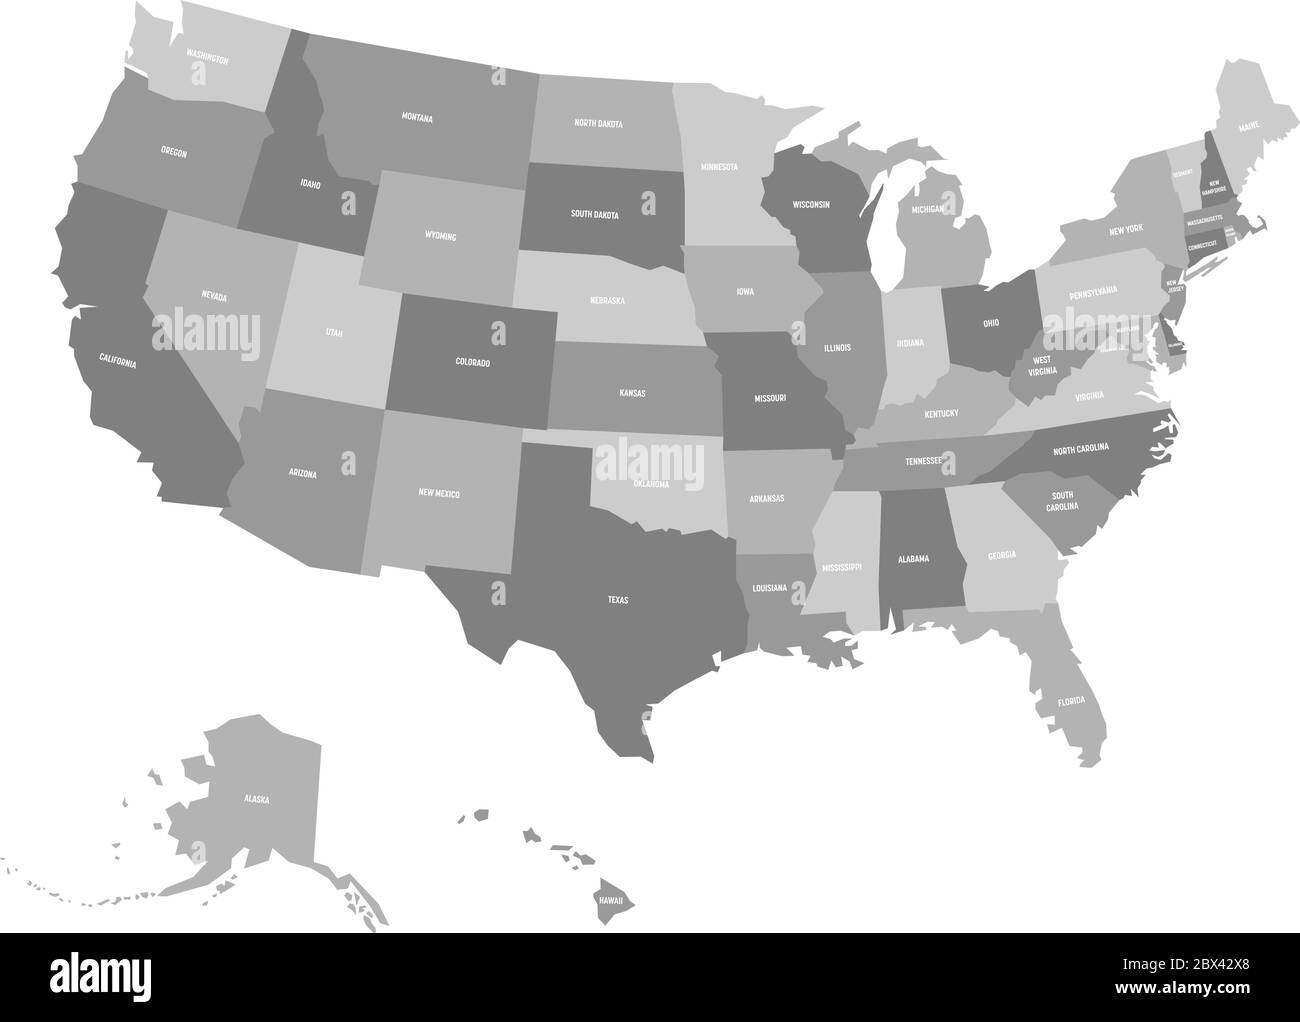 Mappa politica degli Stati Uniti d'America, USA. Semplice mappa vettoriale piatta in quattro tonalità di grigio con etichette bianche sui nomi di stato su sfondo bianco. Illustrazione Vettoriale